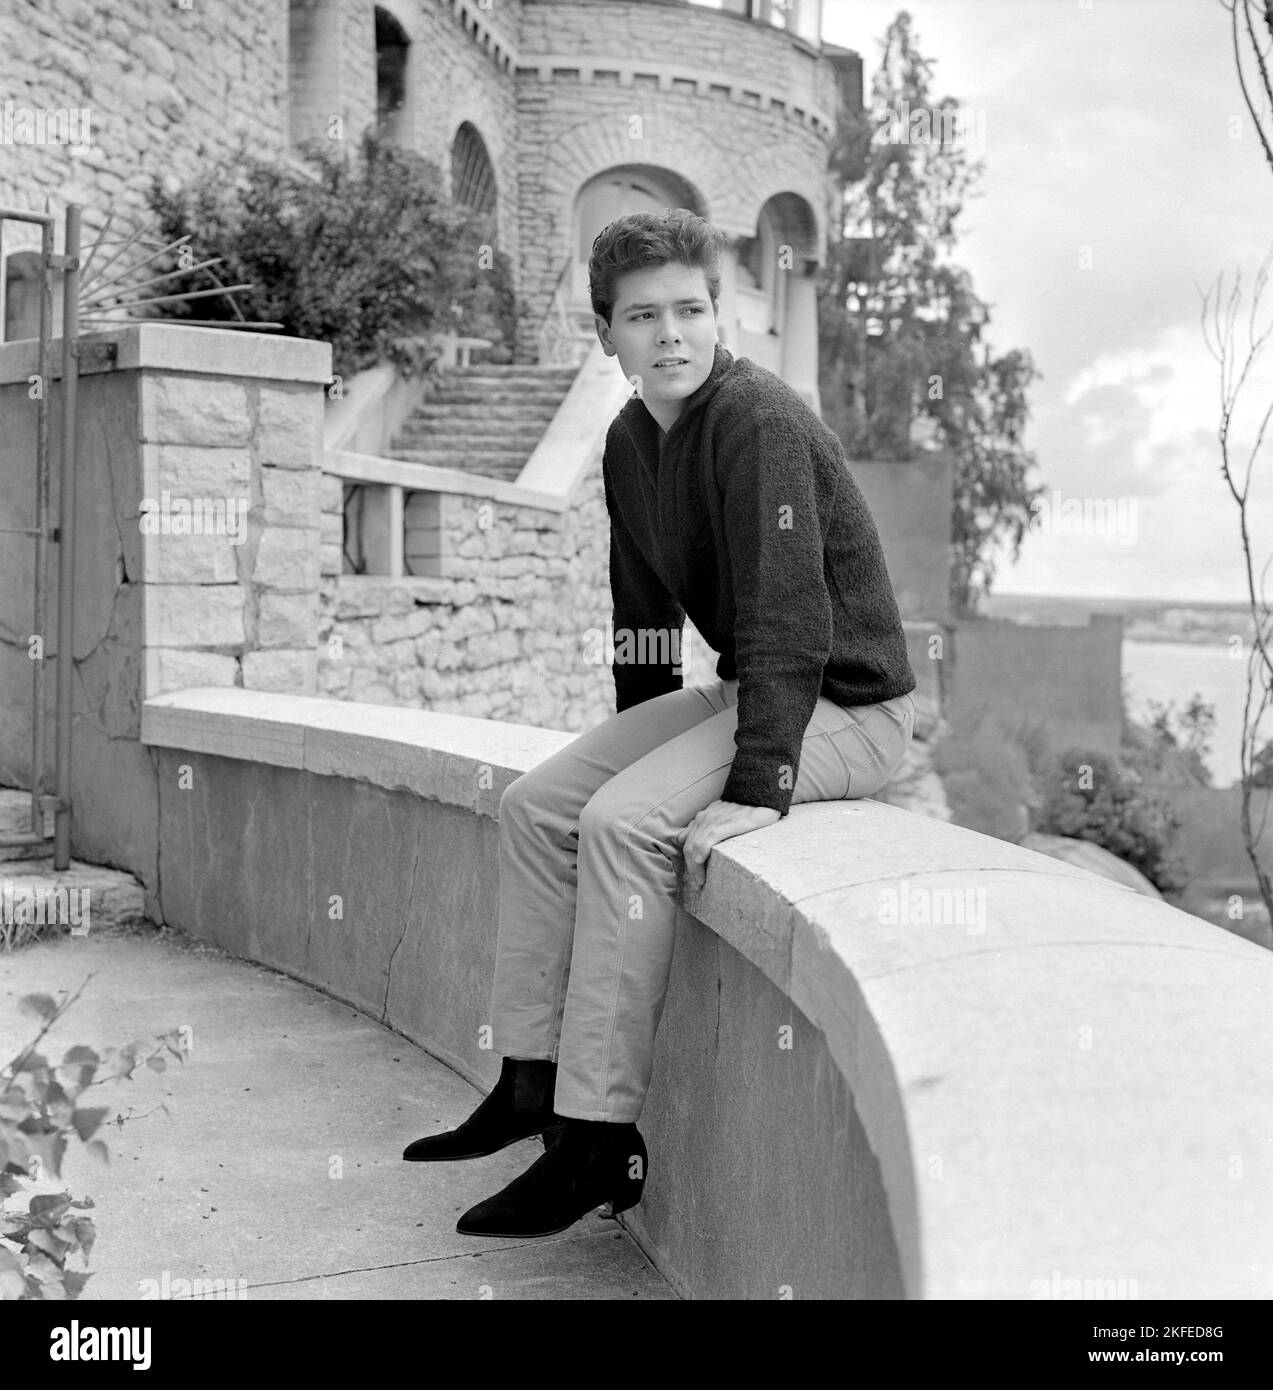 Cliff Richard. Britischer Sänger und Schauspieler. Geboren 1940. Bild 1961 bei einem Besuch in Stockholm, Schweden und Millesgården auf Lidingö. Stockfoto